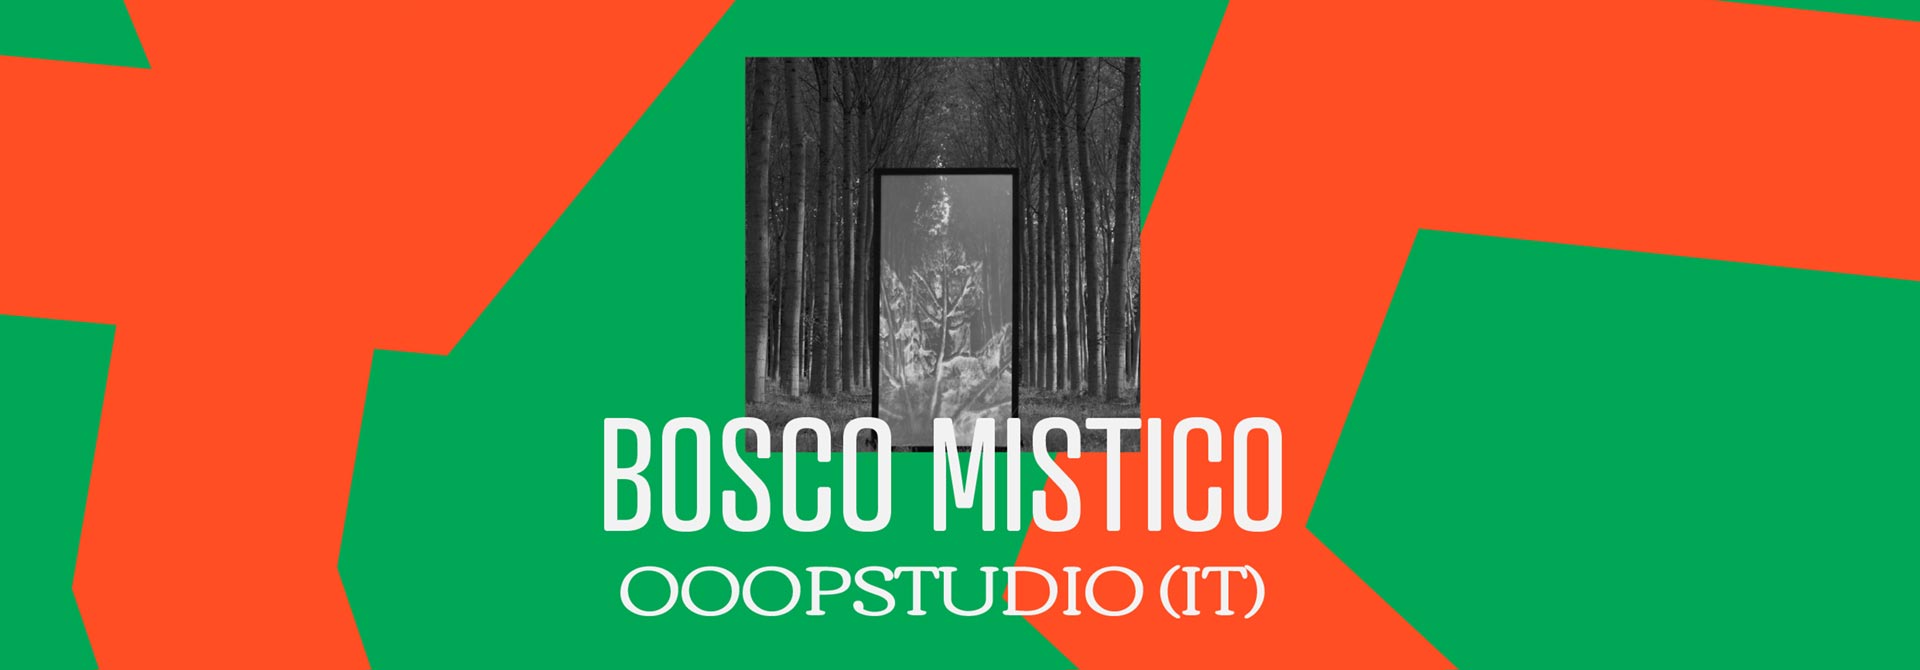 OOOPStudio | Bosco Mistico (IT)